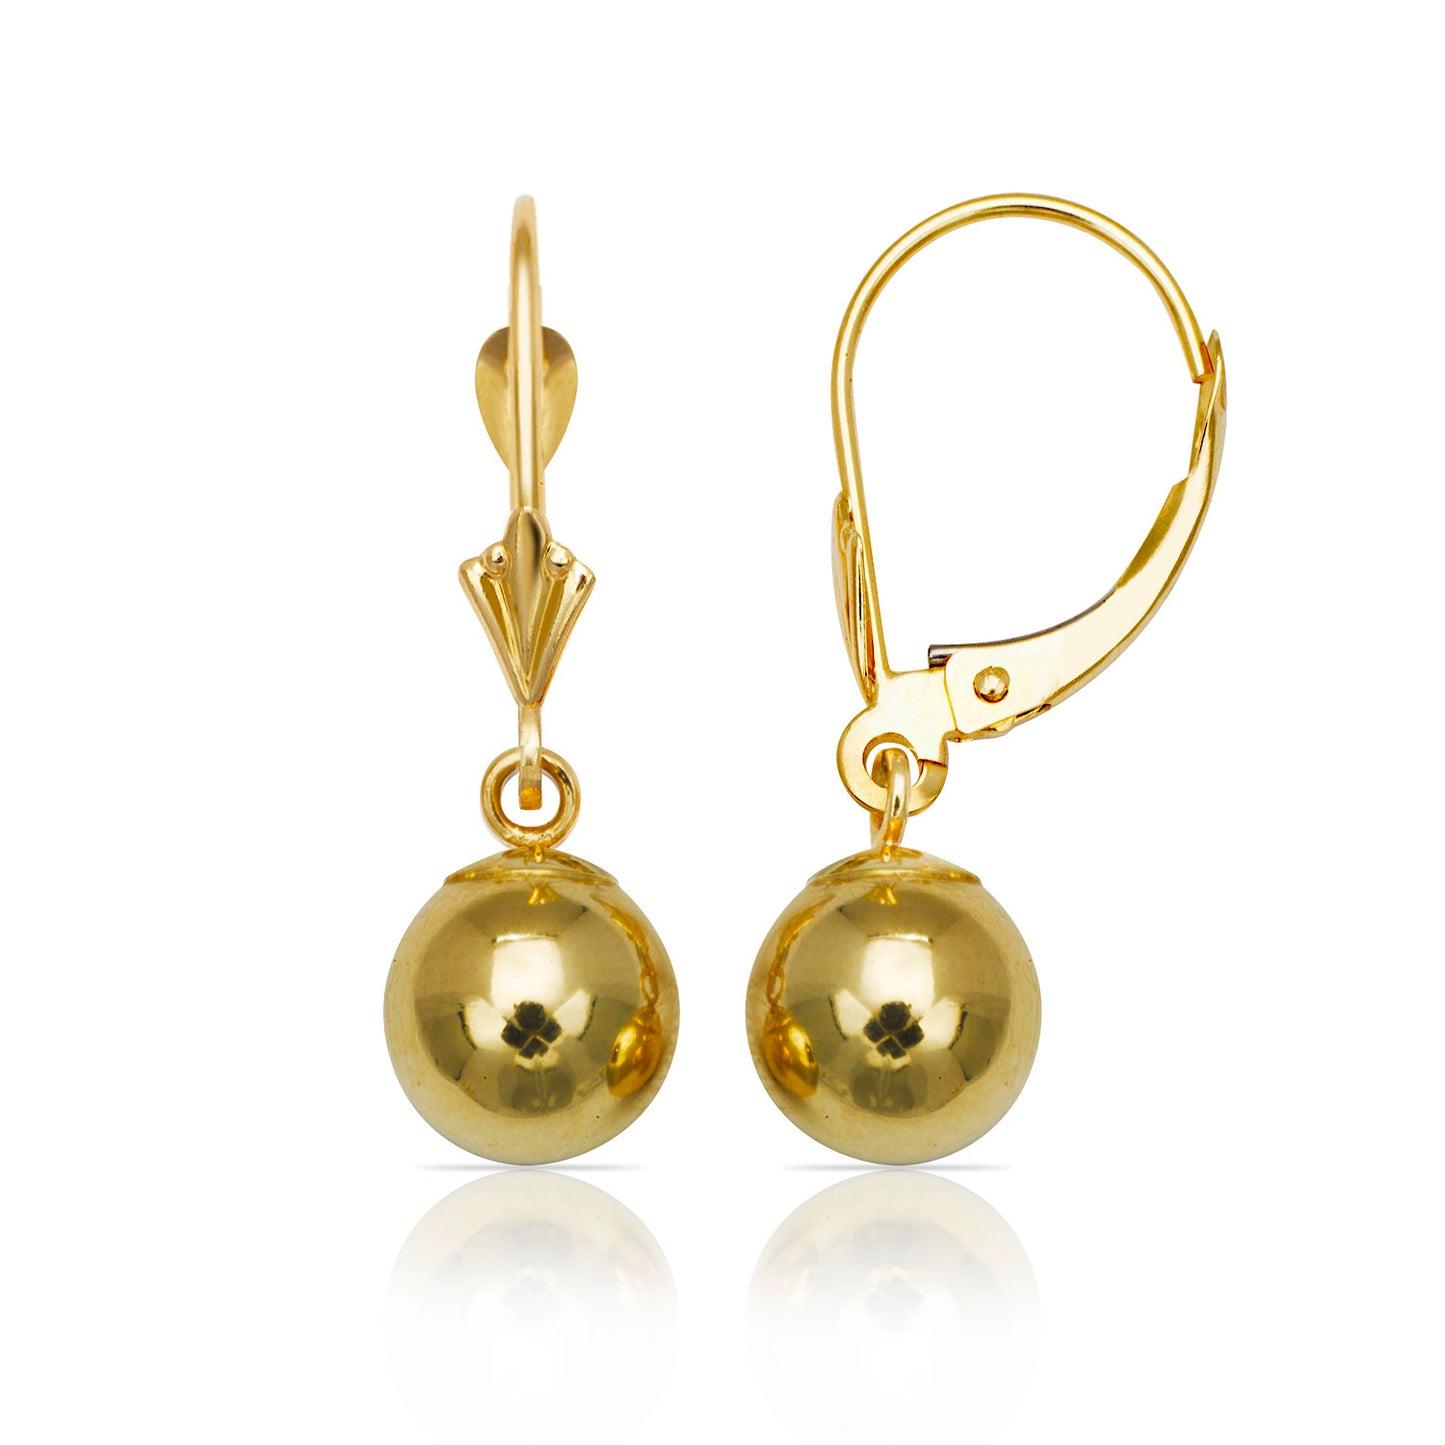 Minimalist 14K Gold Ball Leverback Earrings